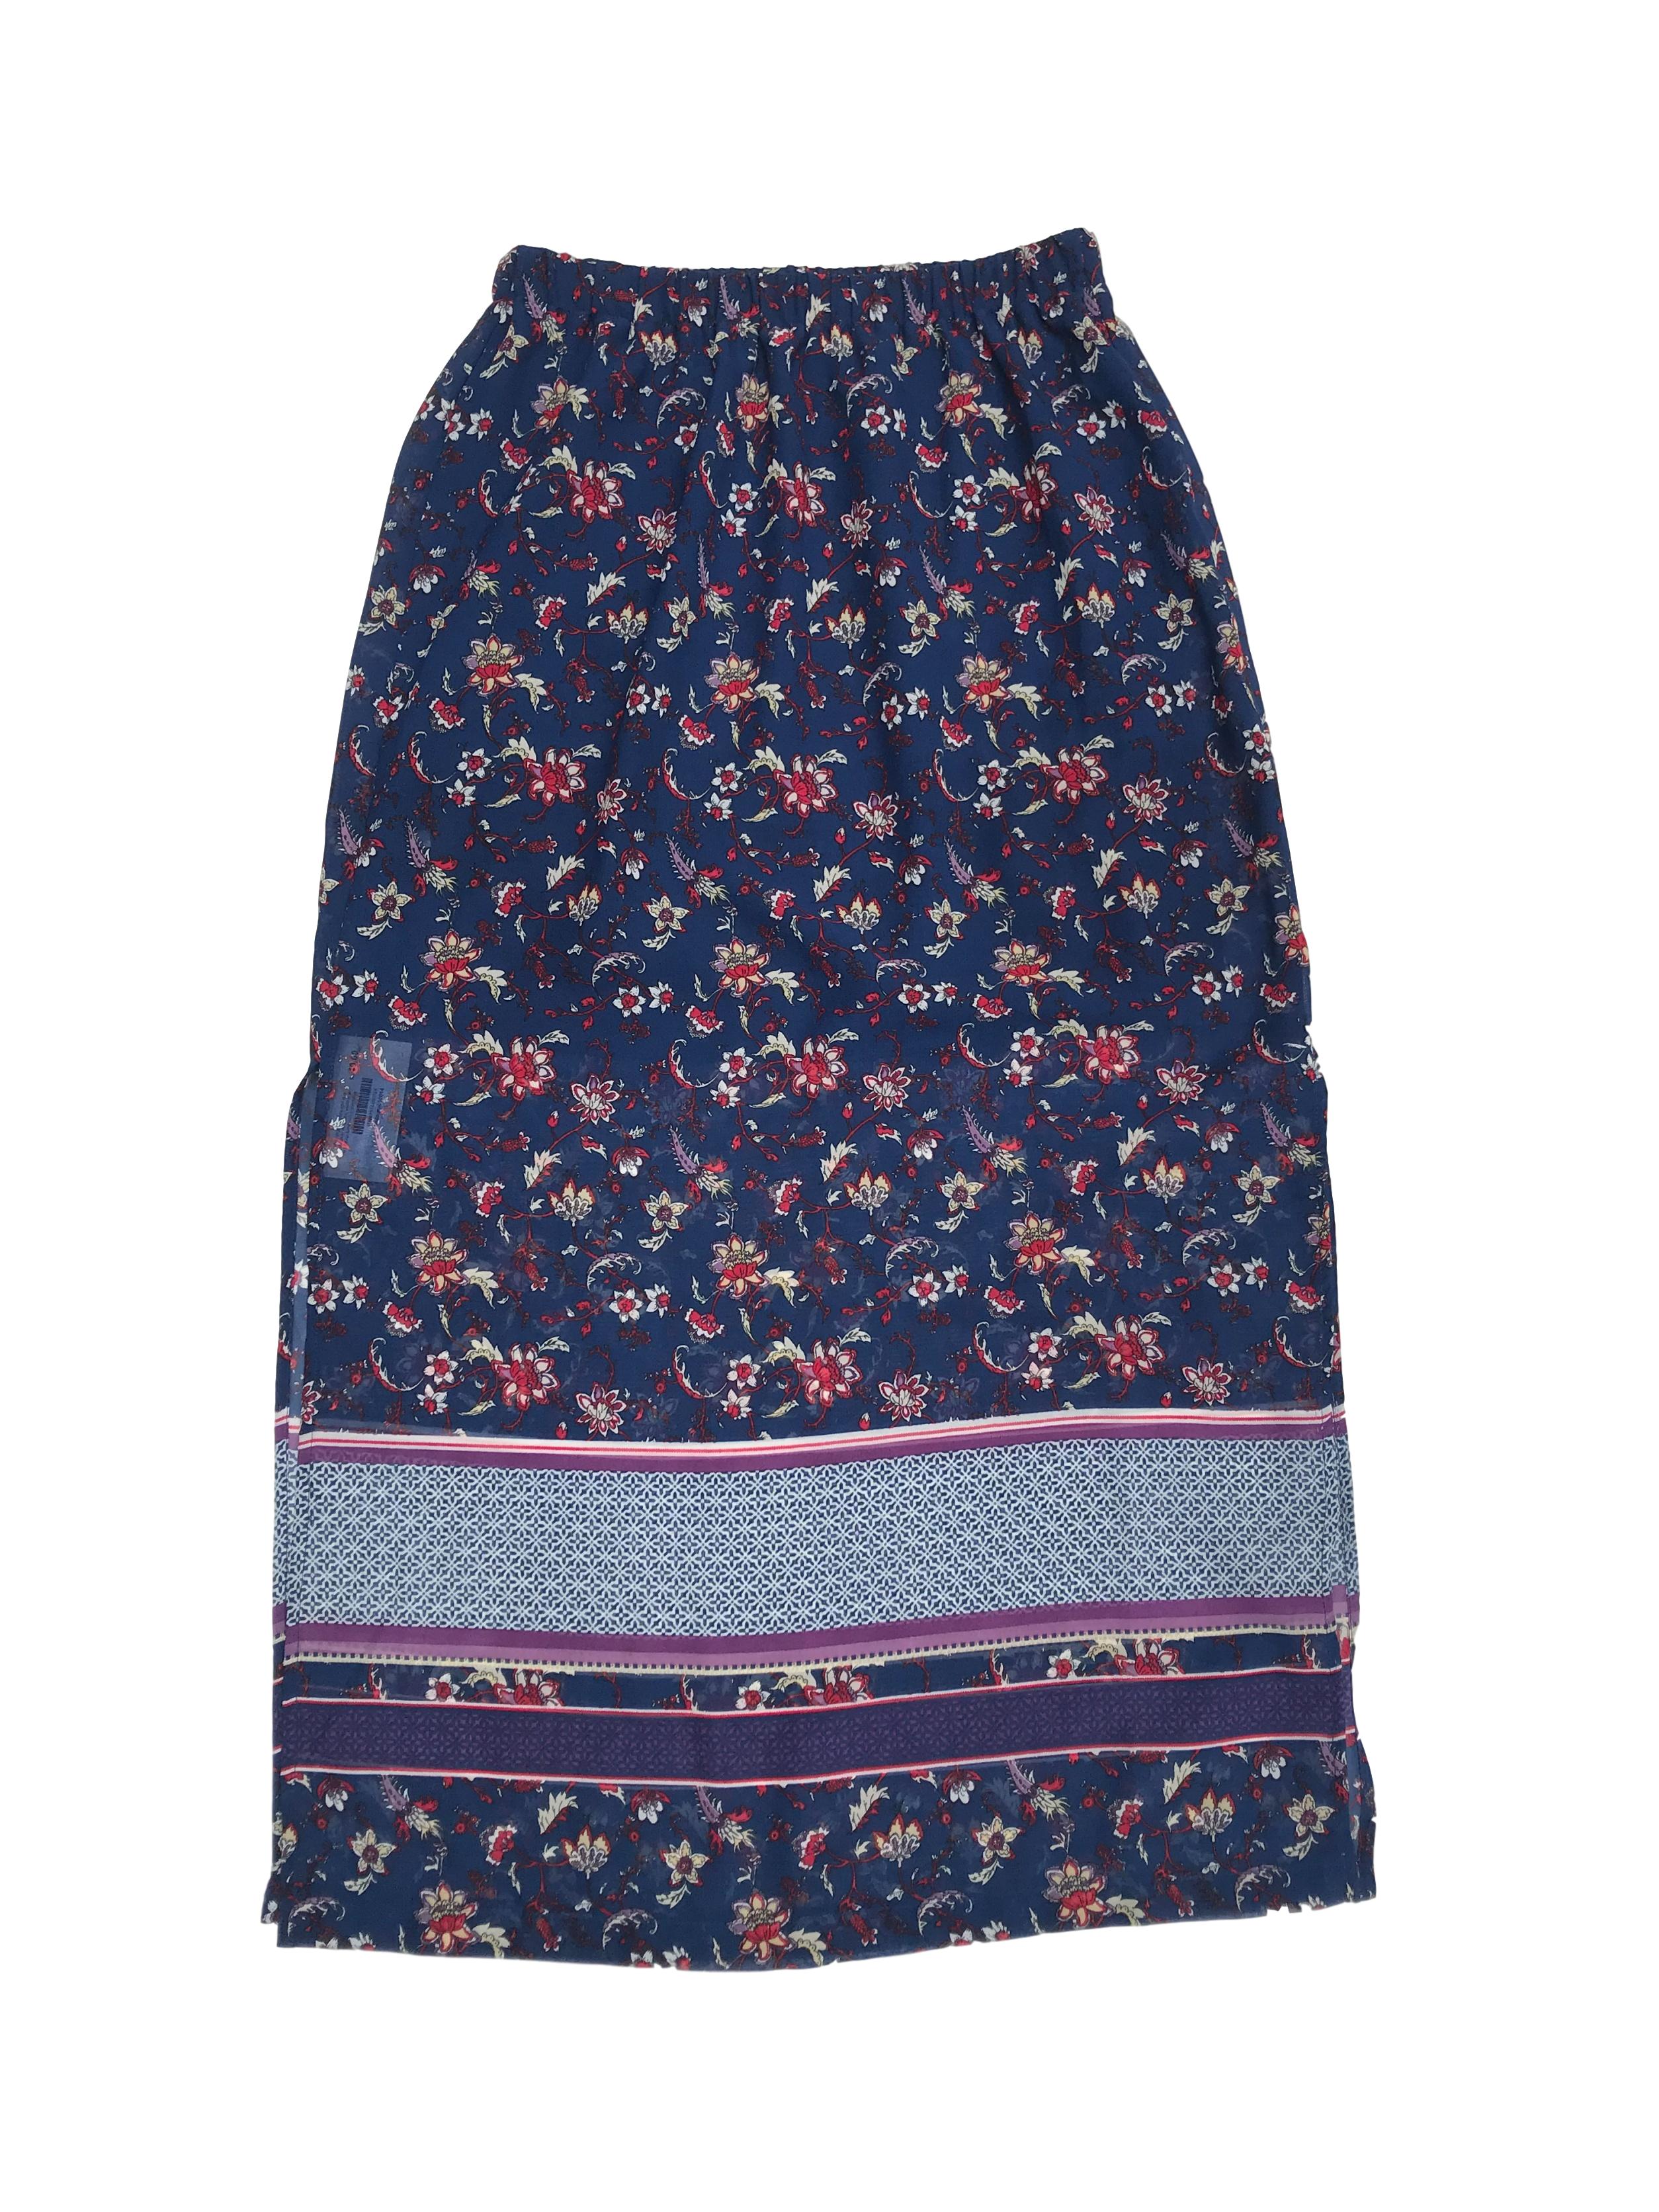 Falda larga de gasa azul con estampado de flores, elástico en la cintura, forro mini y aberturas laterales. Largo 90cm